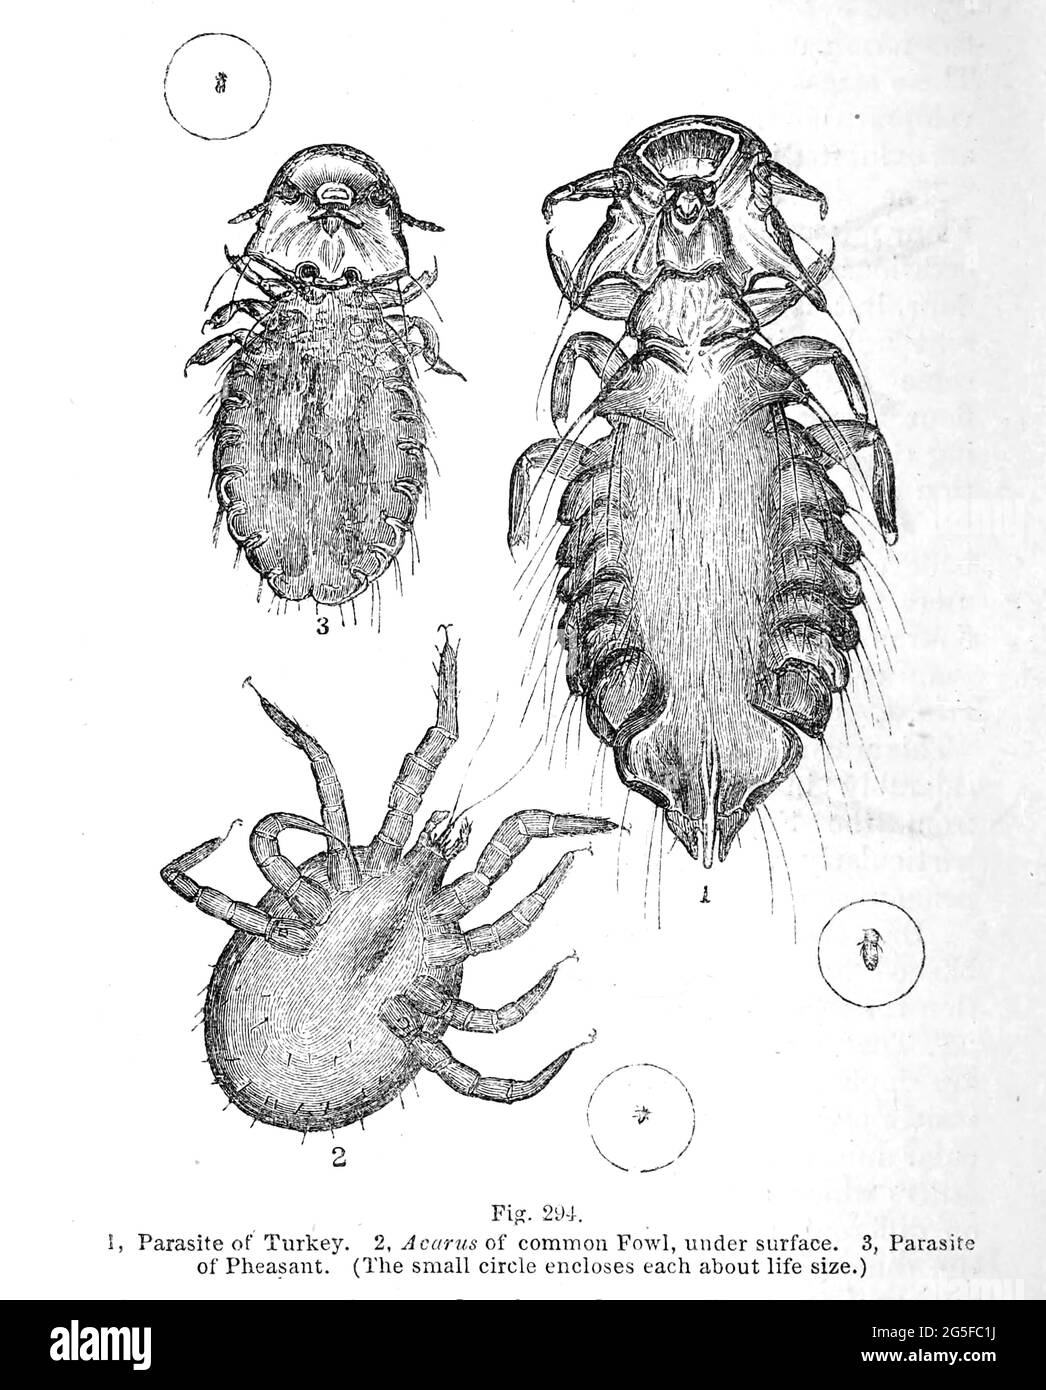 Illustrazione di minuscoli organismi al microscopio dal libro ' il microscopio : la sua storia, costruzione, e applicazione ' di Hogg, Jabez, 1817-1899 pubblicato a Londra da G. Routledge nel 1869 con illustrazioni di TUFFEN WEST Foto Stock